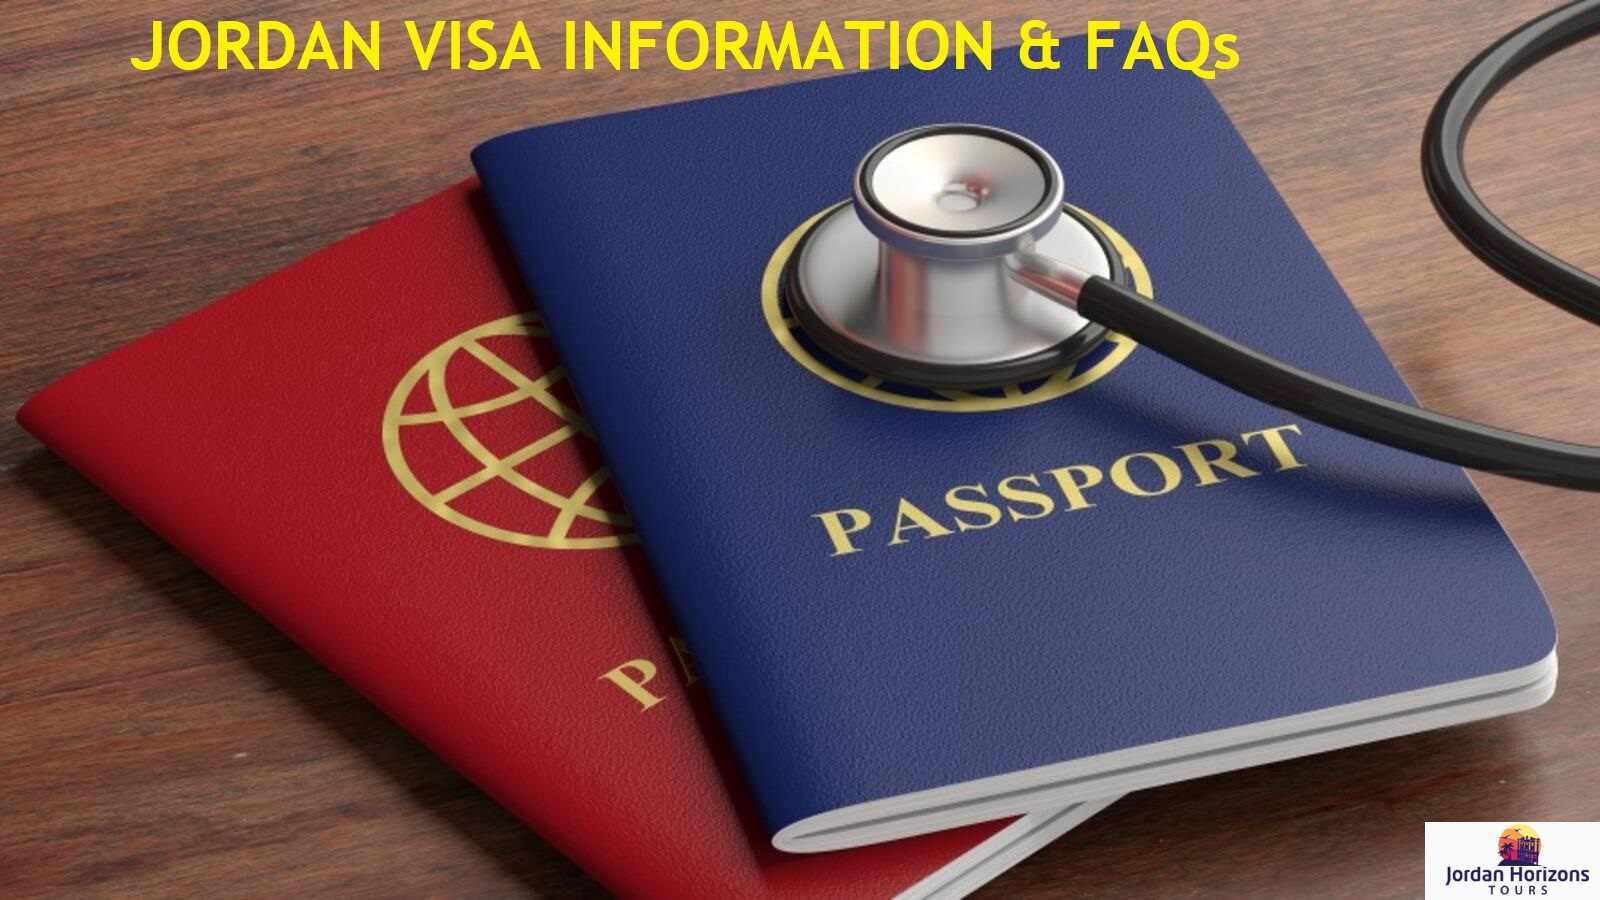 Jordan Visa Information 